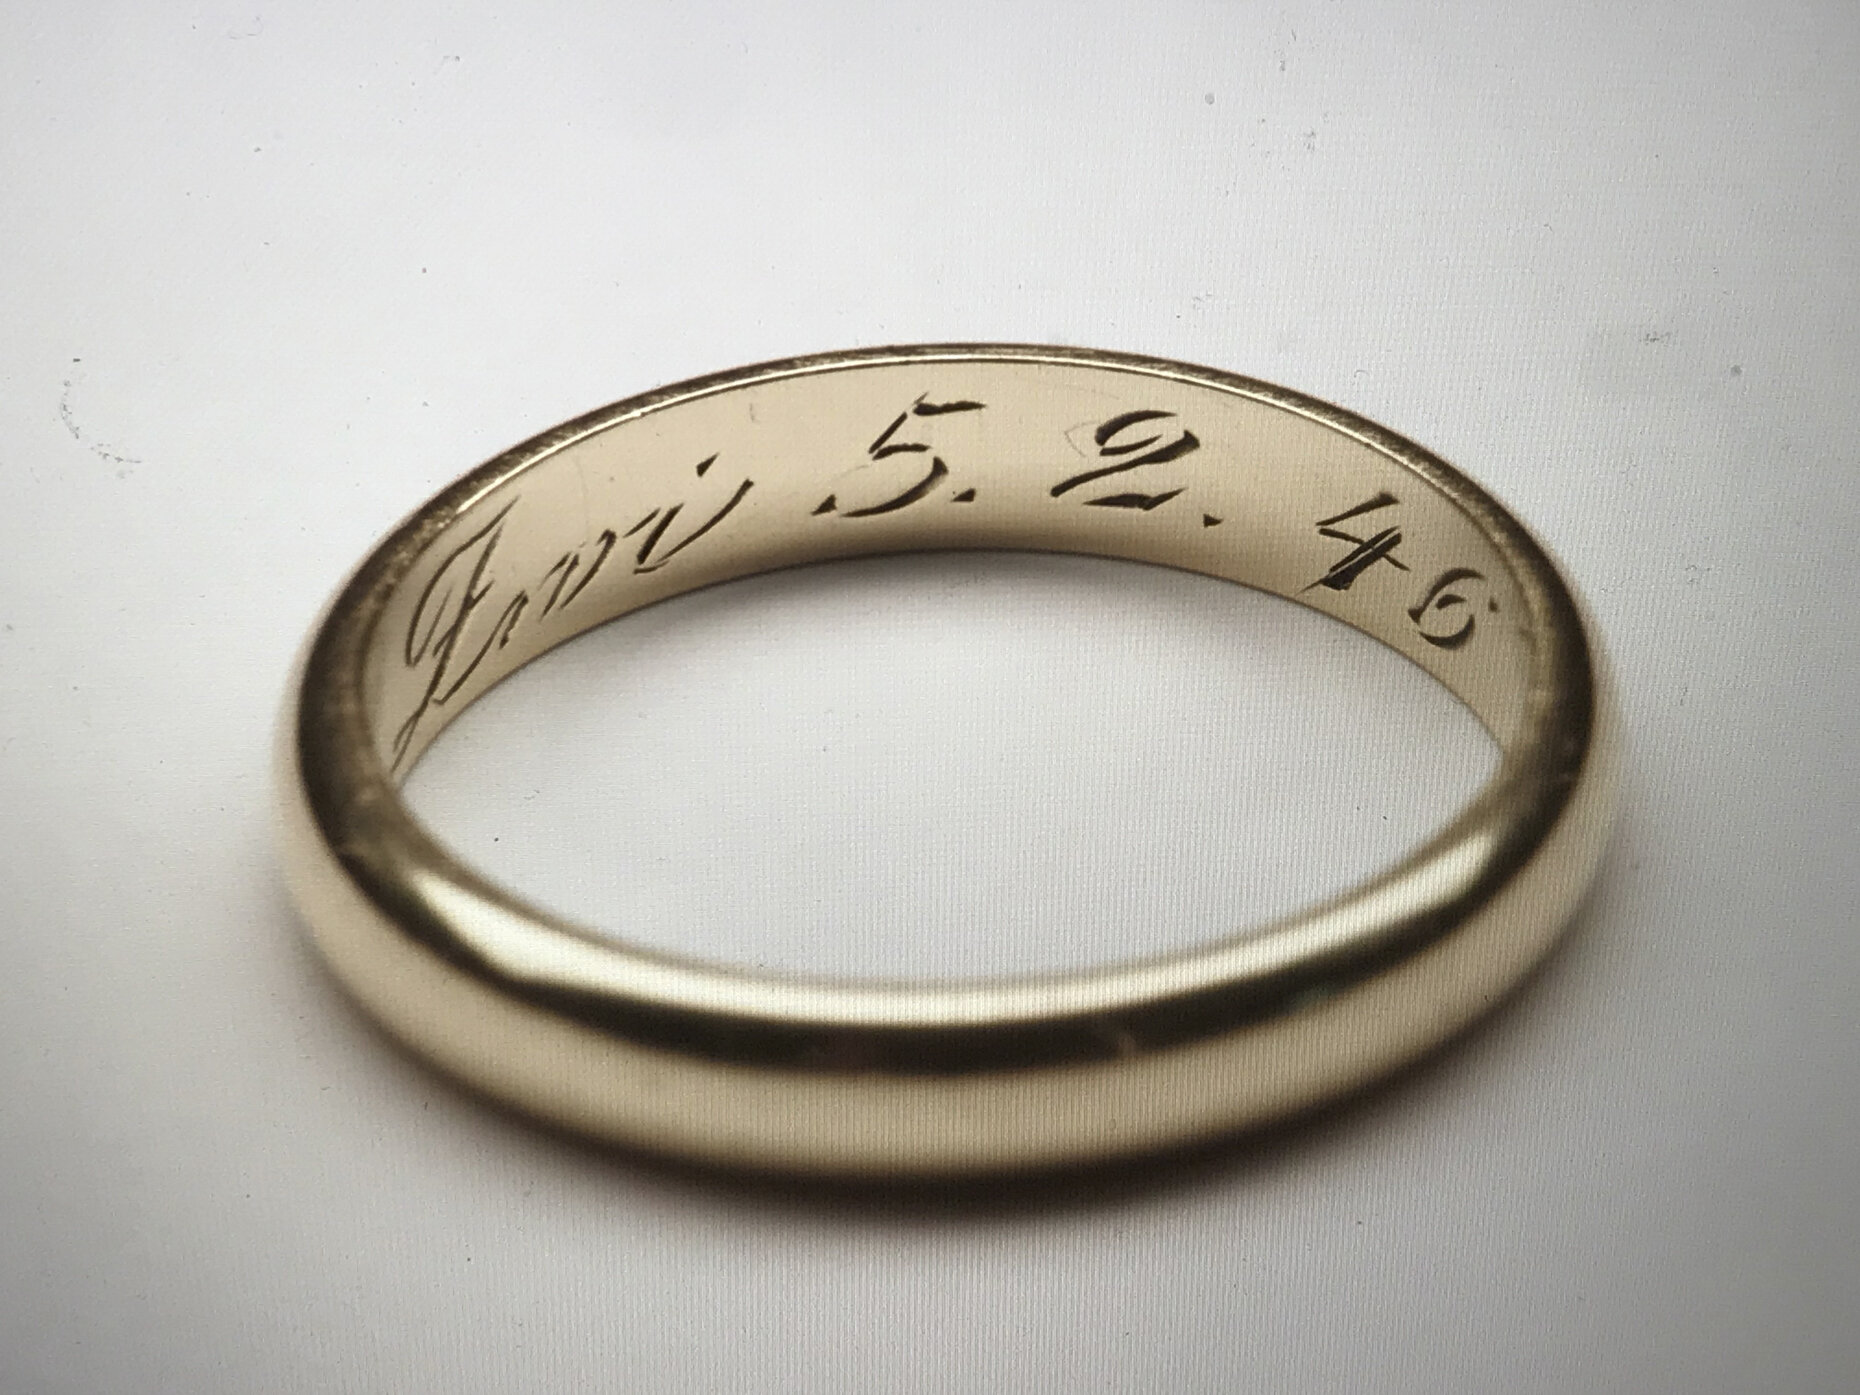 Lola's Wedding Ring, 1946